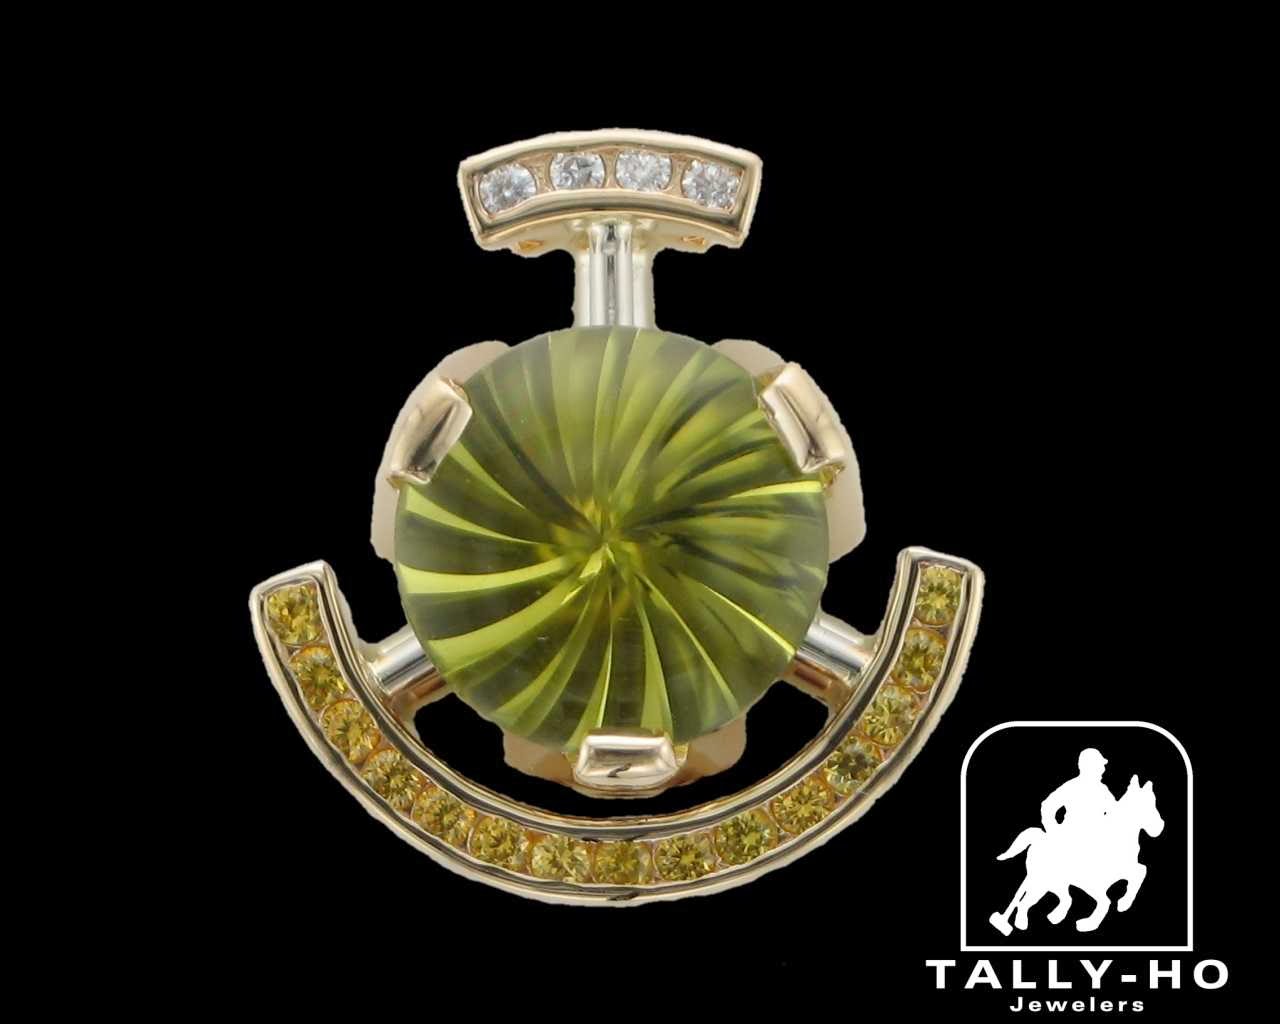 Tally-Ho Jewelers